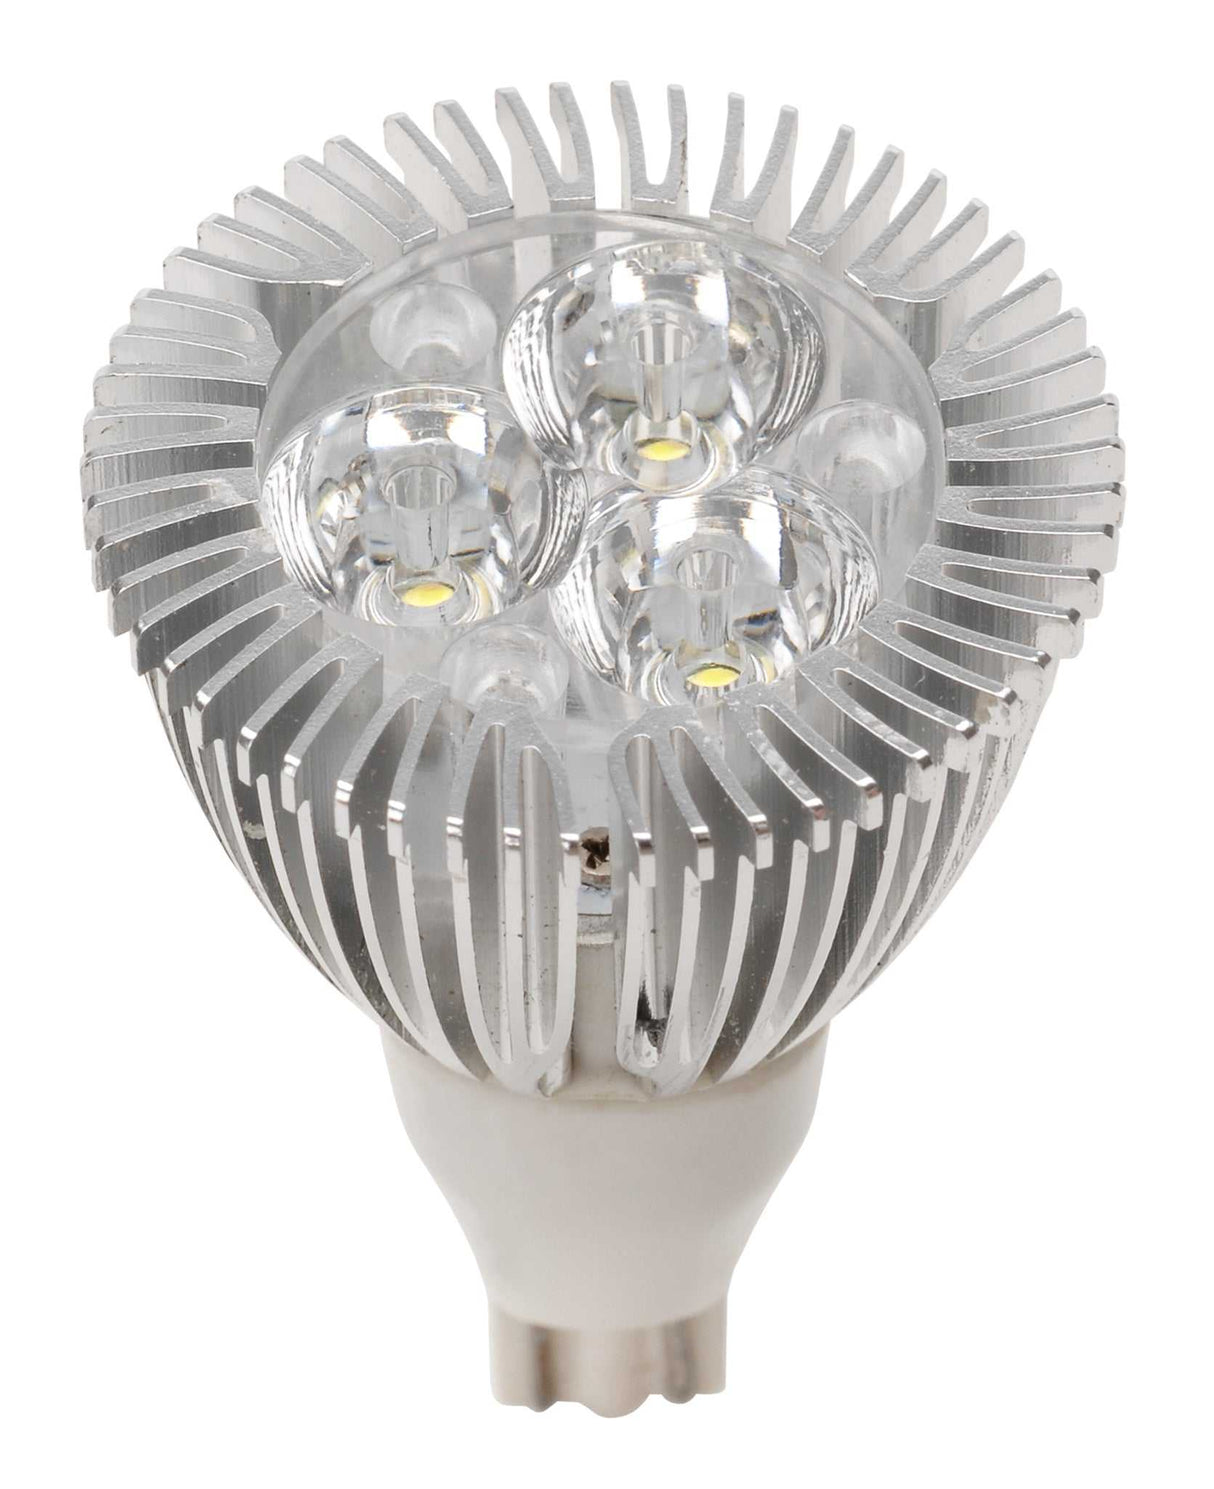 016-921-220 Multi Purpose Light Bulb - LED